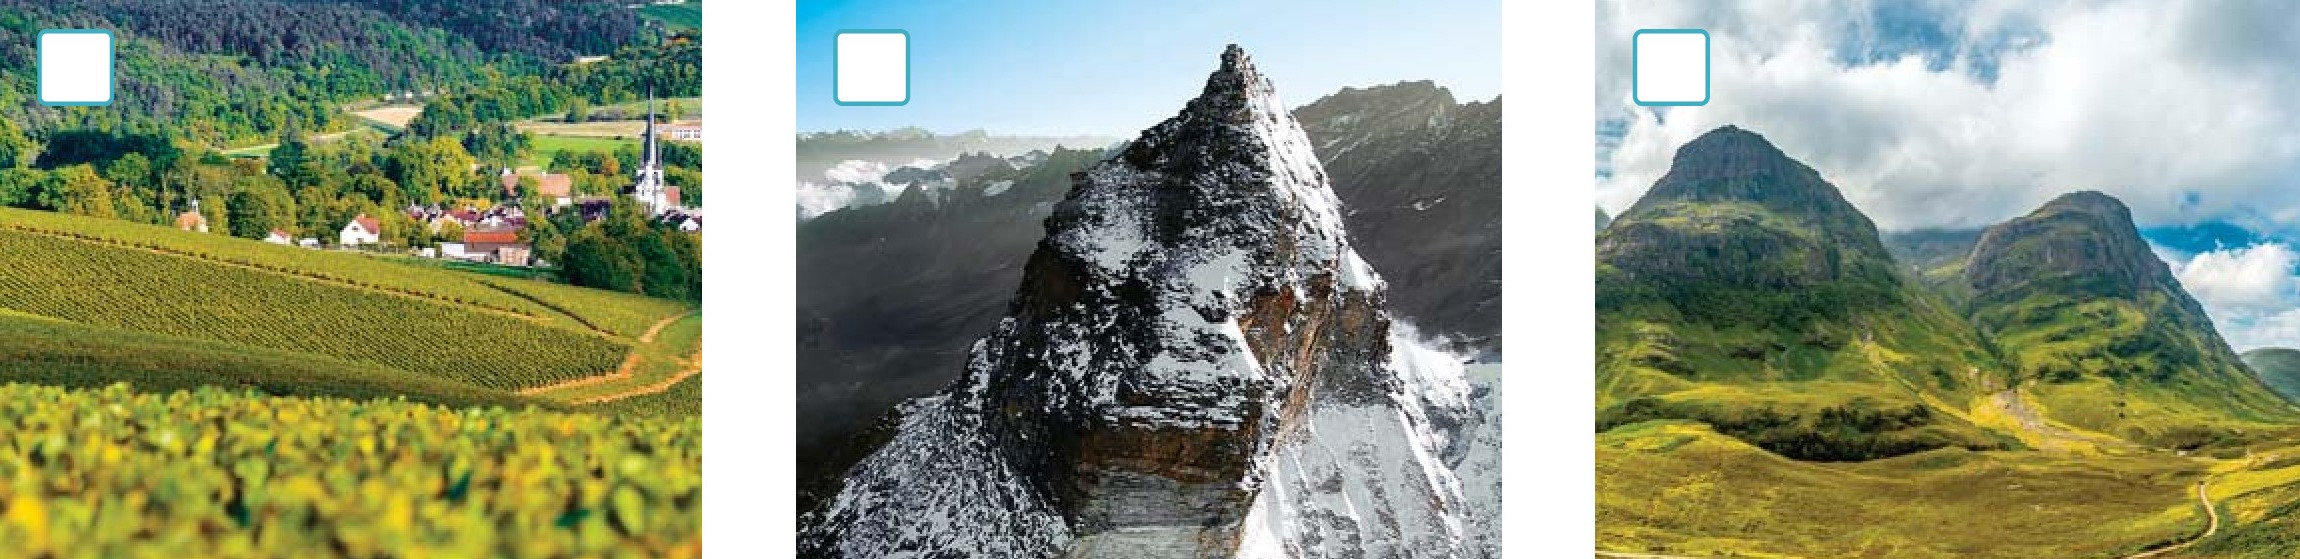 La prima immagine rappresenta un paesaggio collinare; la seconda immagine la vetta appuntita di una montagna; la terza immagine delle montagne dalle cime arrotondate.